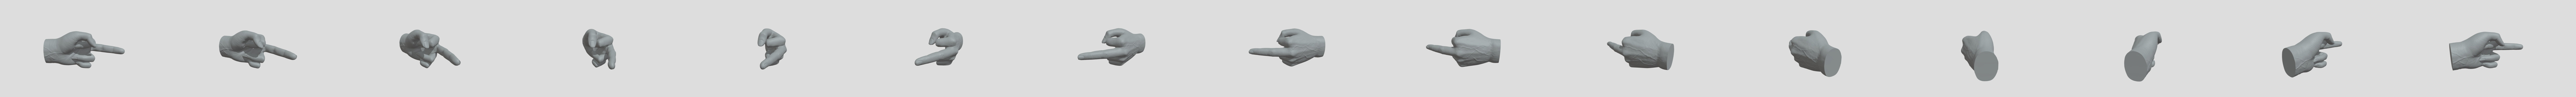 Middle finger hand - Download Free 3D model by D.p (@Danser.com